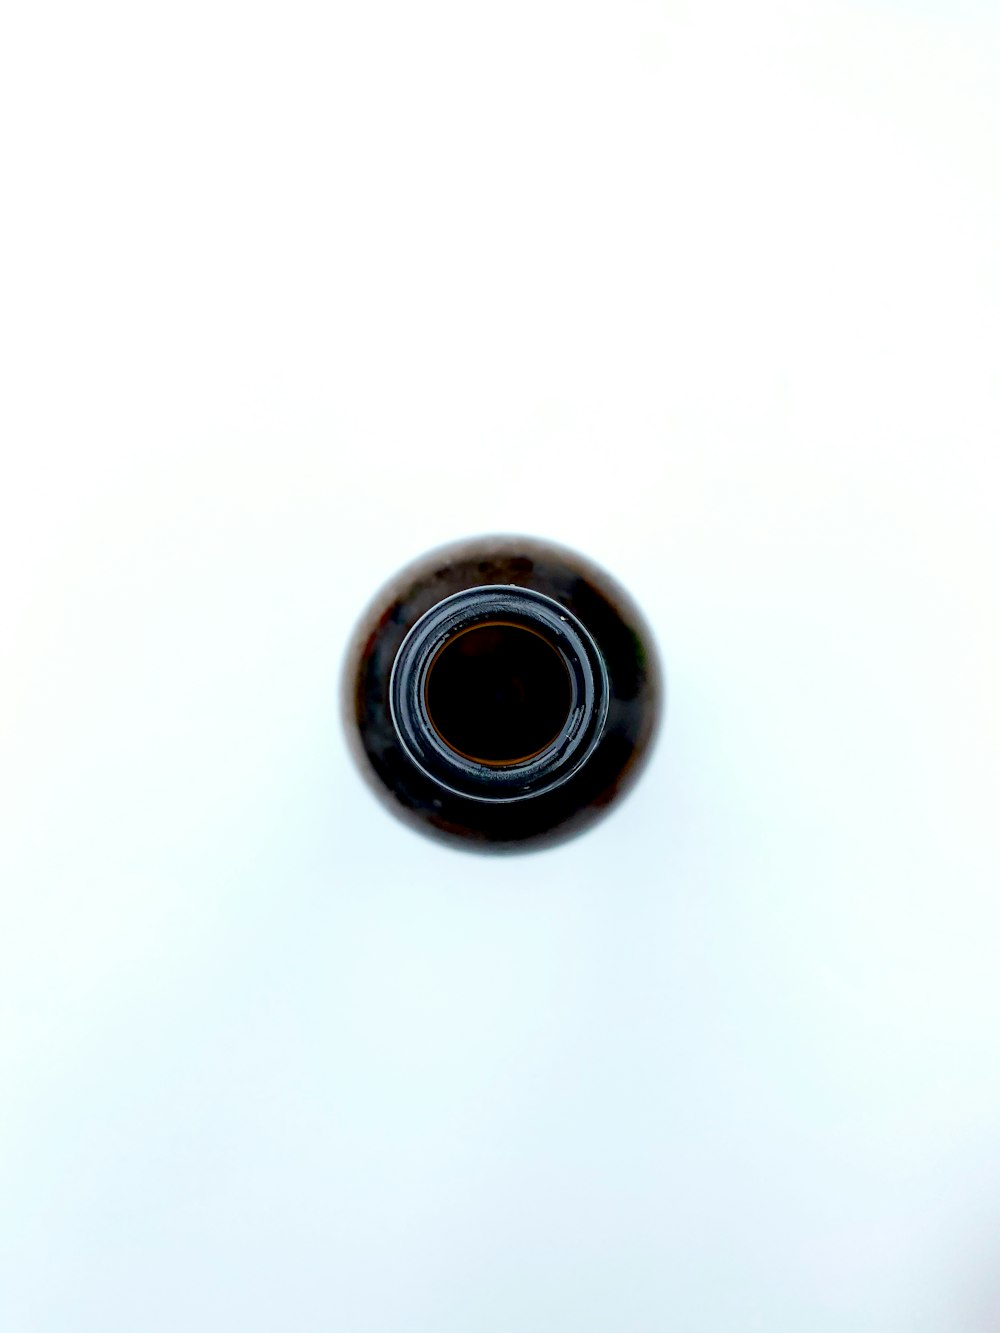 Dispositif rond noir sur surface blanche